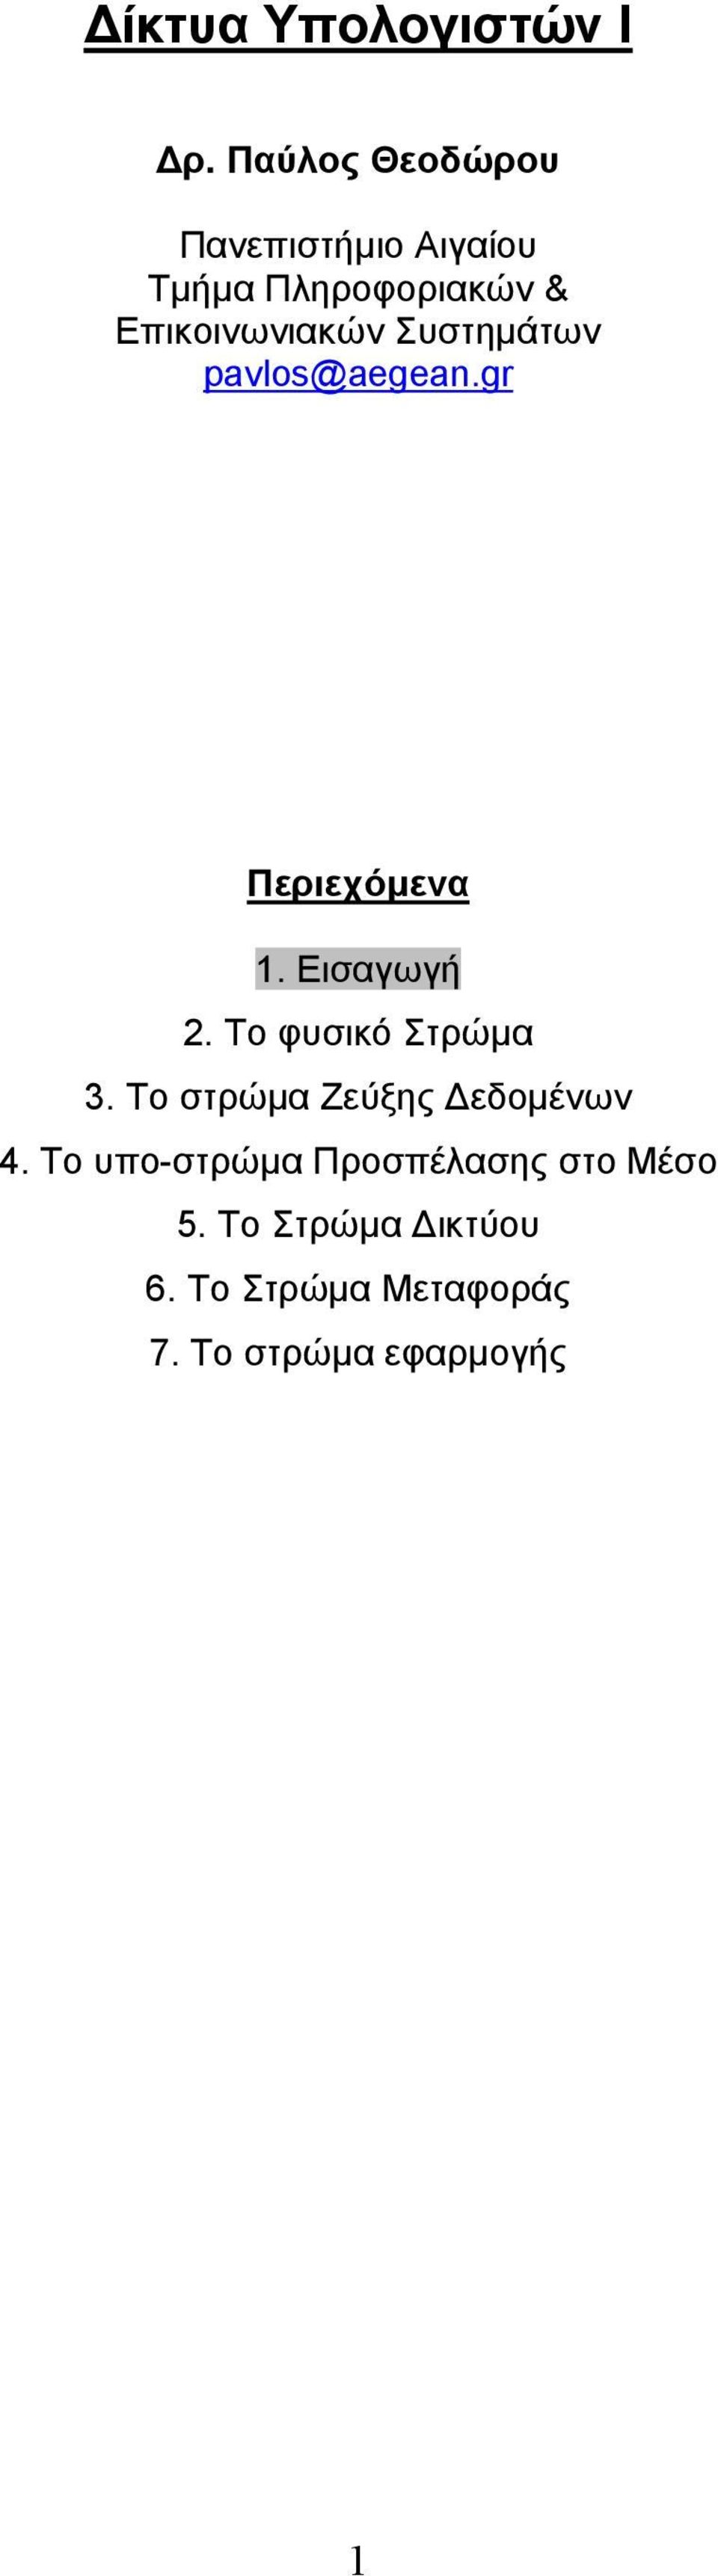 Συστηµάτων pavlos@aegean.gr Περιεχόµενα 1. Εισαγωγή 2. Το φυσικό Στρώµα 3.